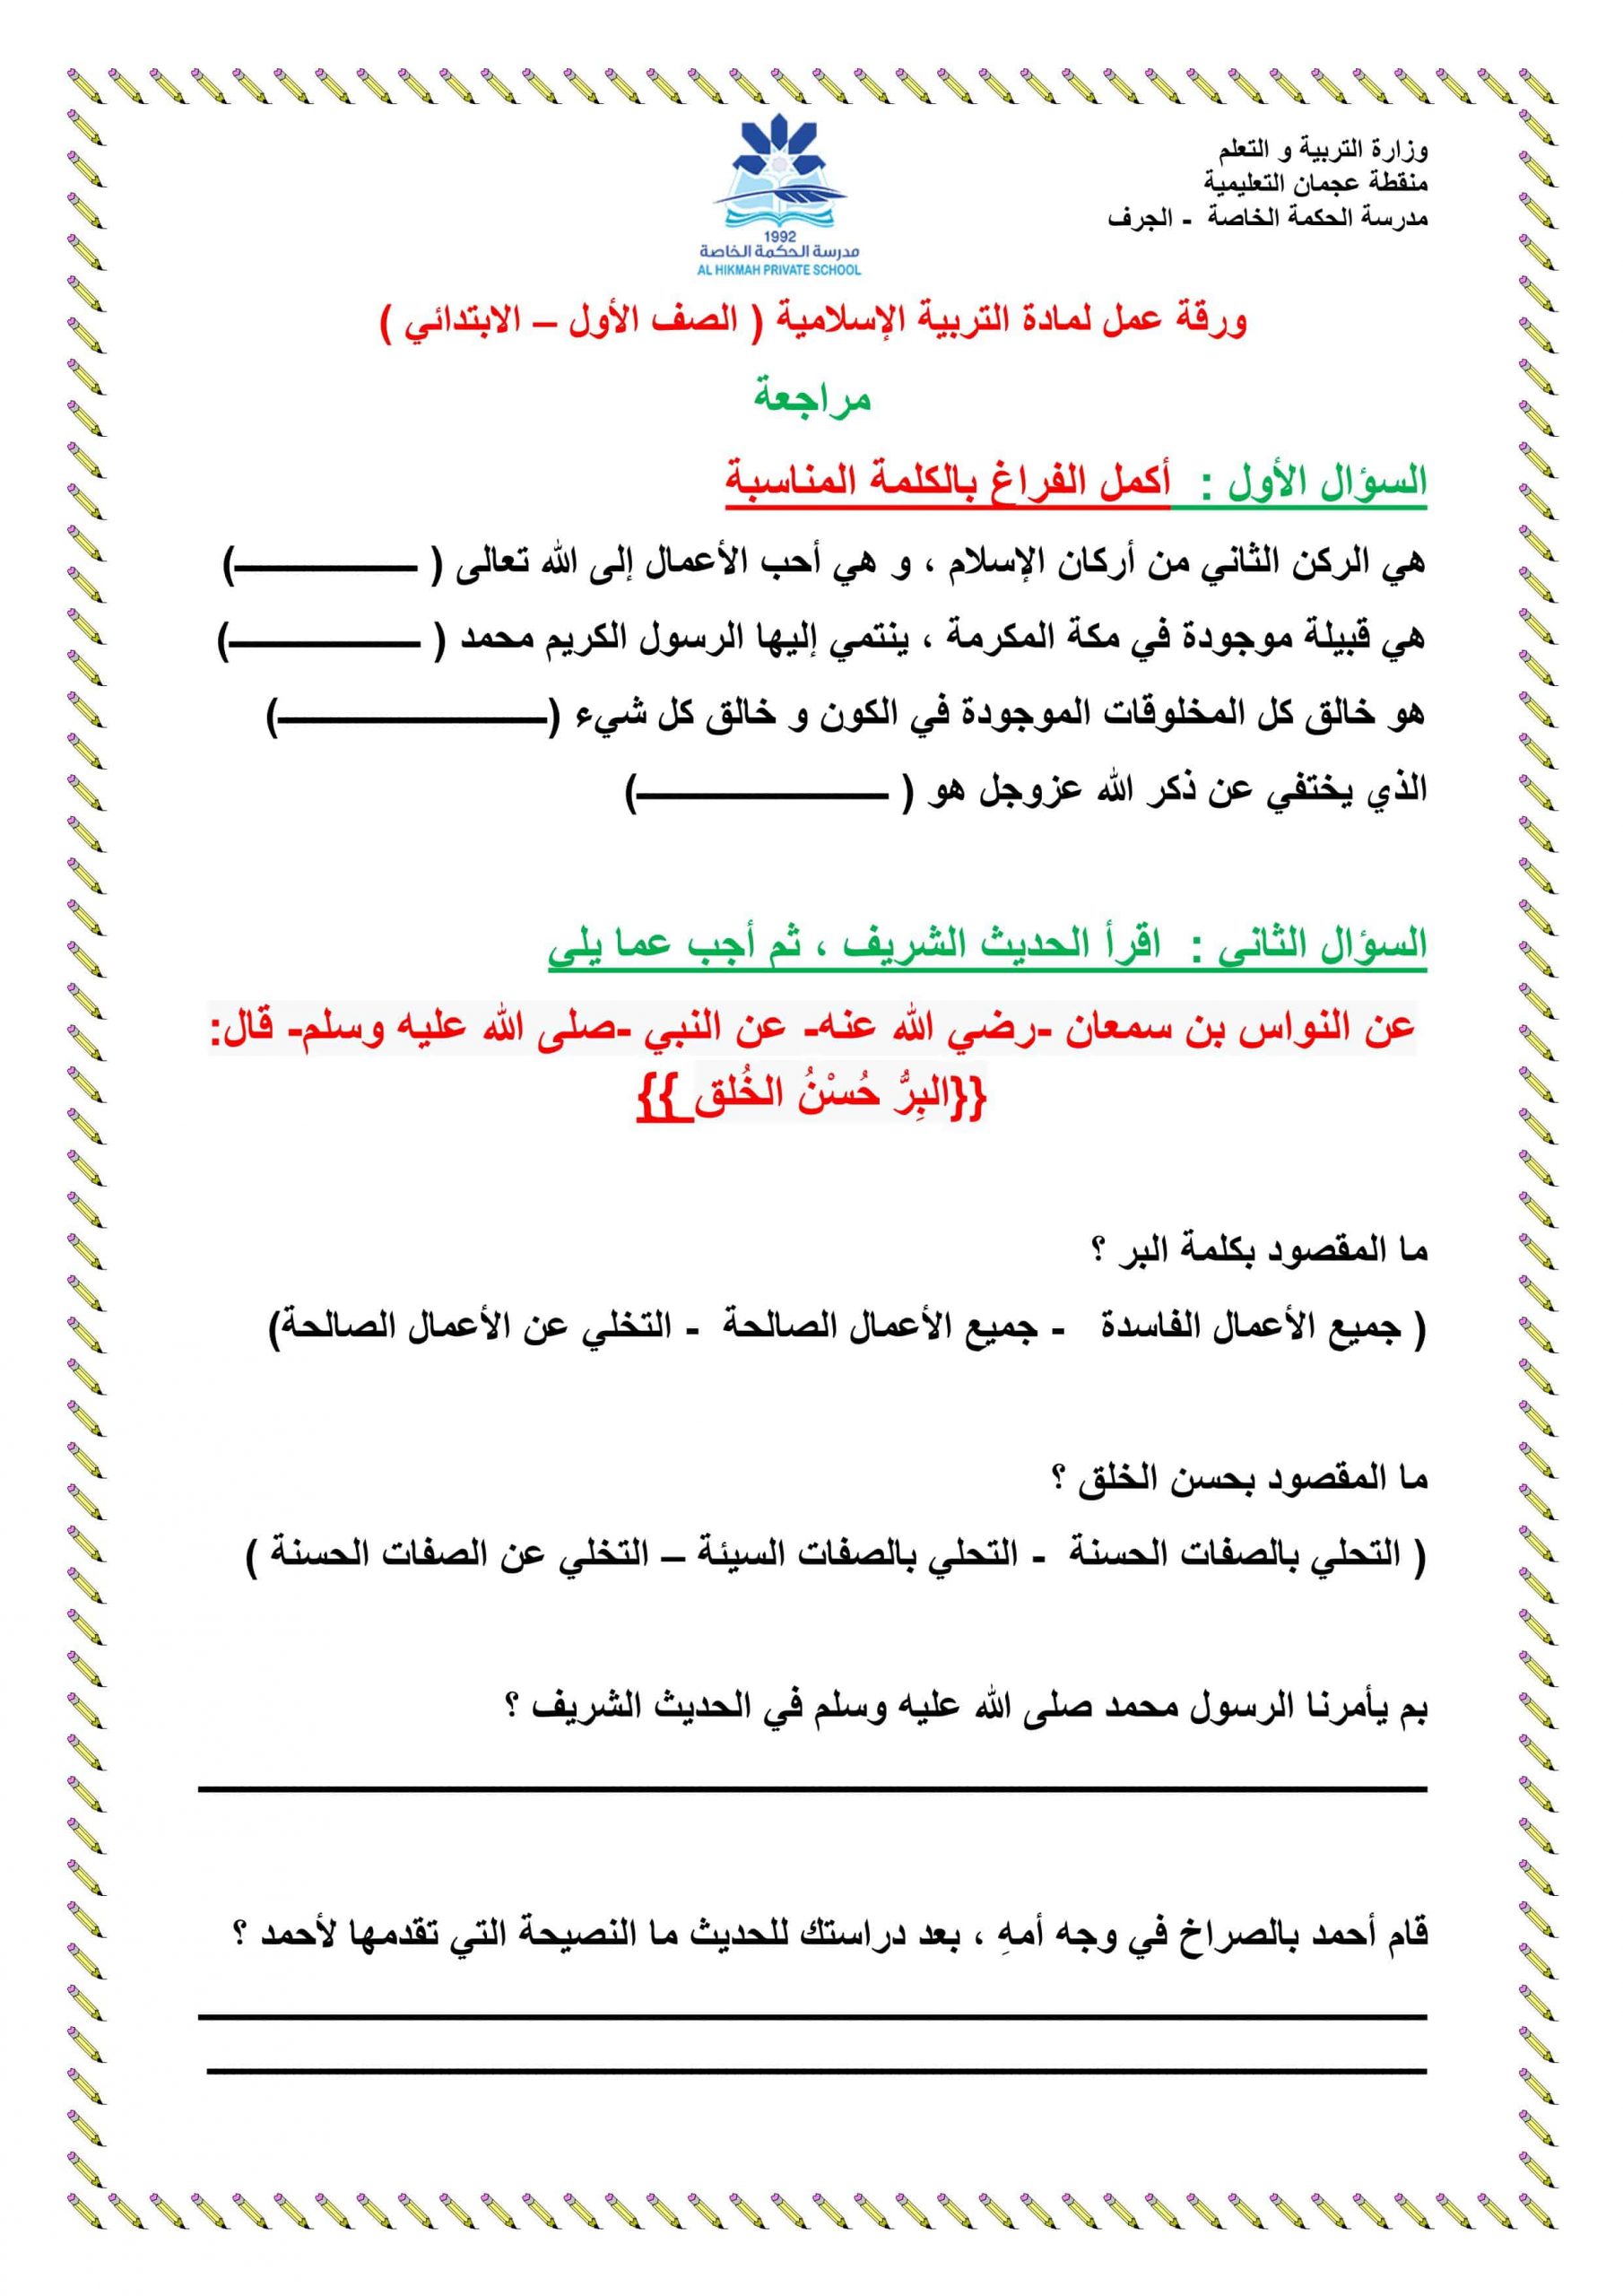 ورقة عمل مراجعة عامة الفصل الدراسي الثاني الصف الأول مادة التربية الإسلامية